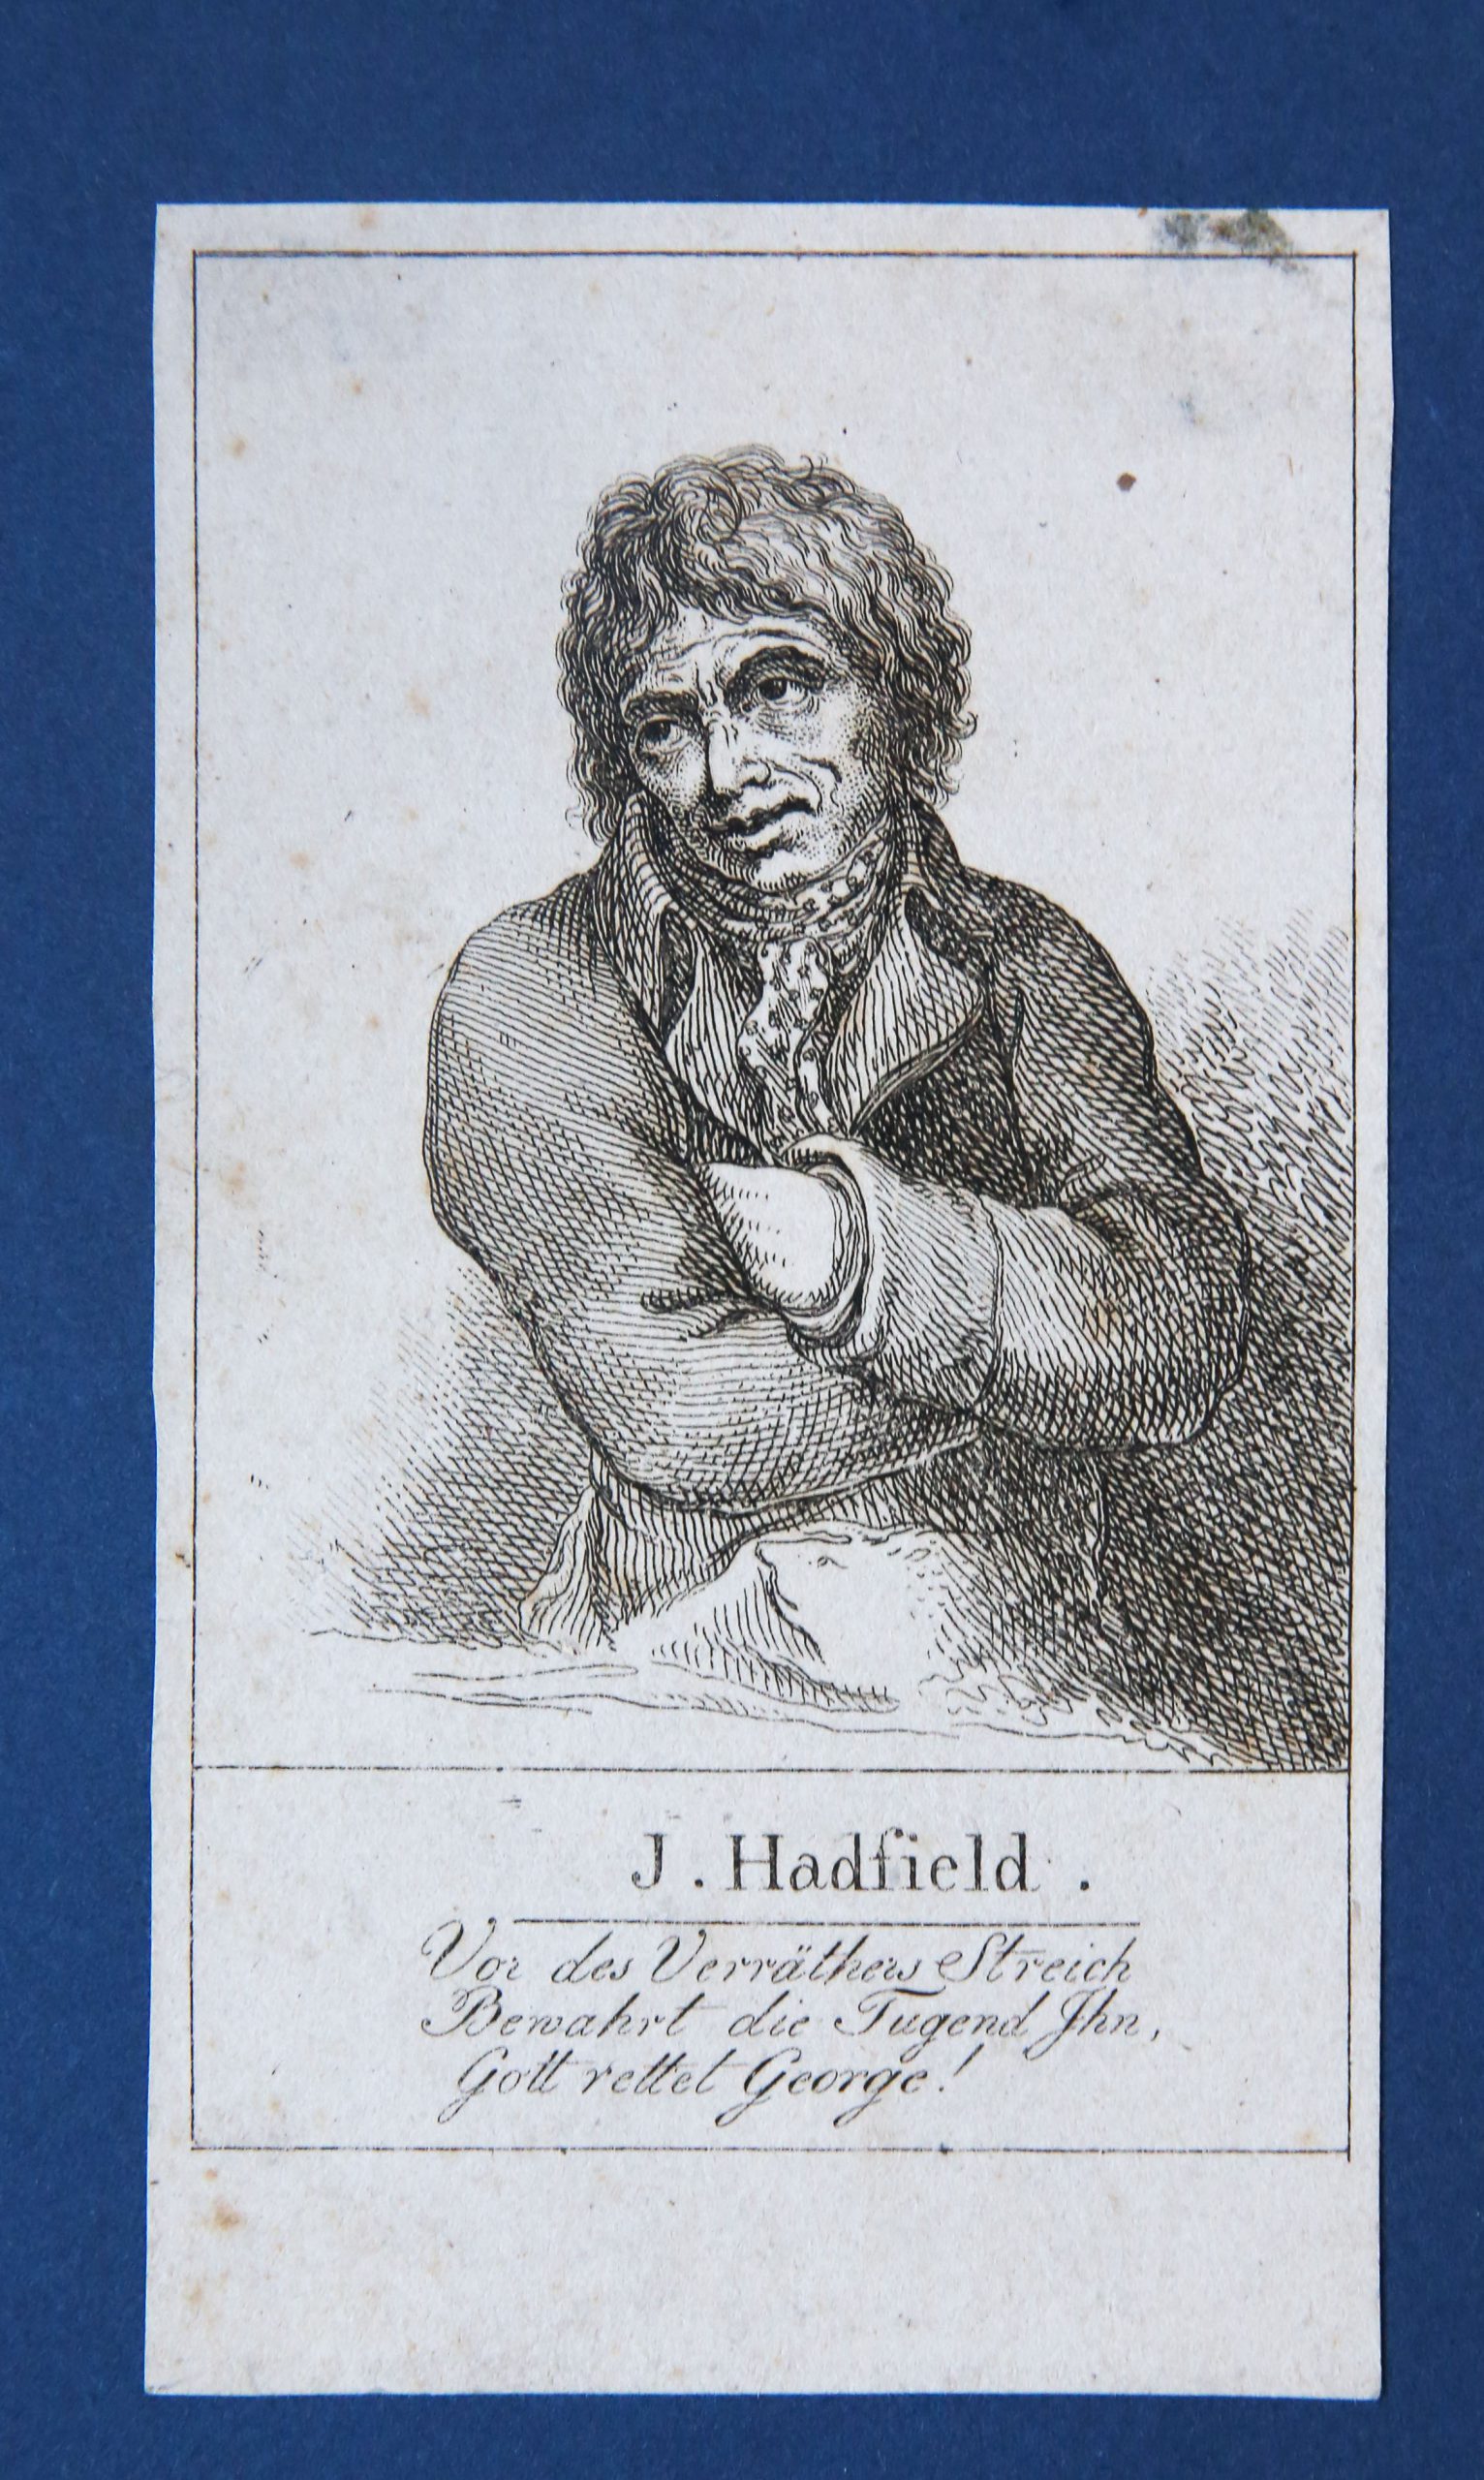 'J. Hadfield. Vor des verraters streich / Bewahrt die Tugend Ihn / Gott rettet George!', Portrait James Hadfield, c. 1800